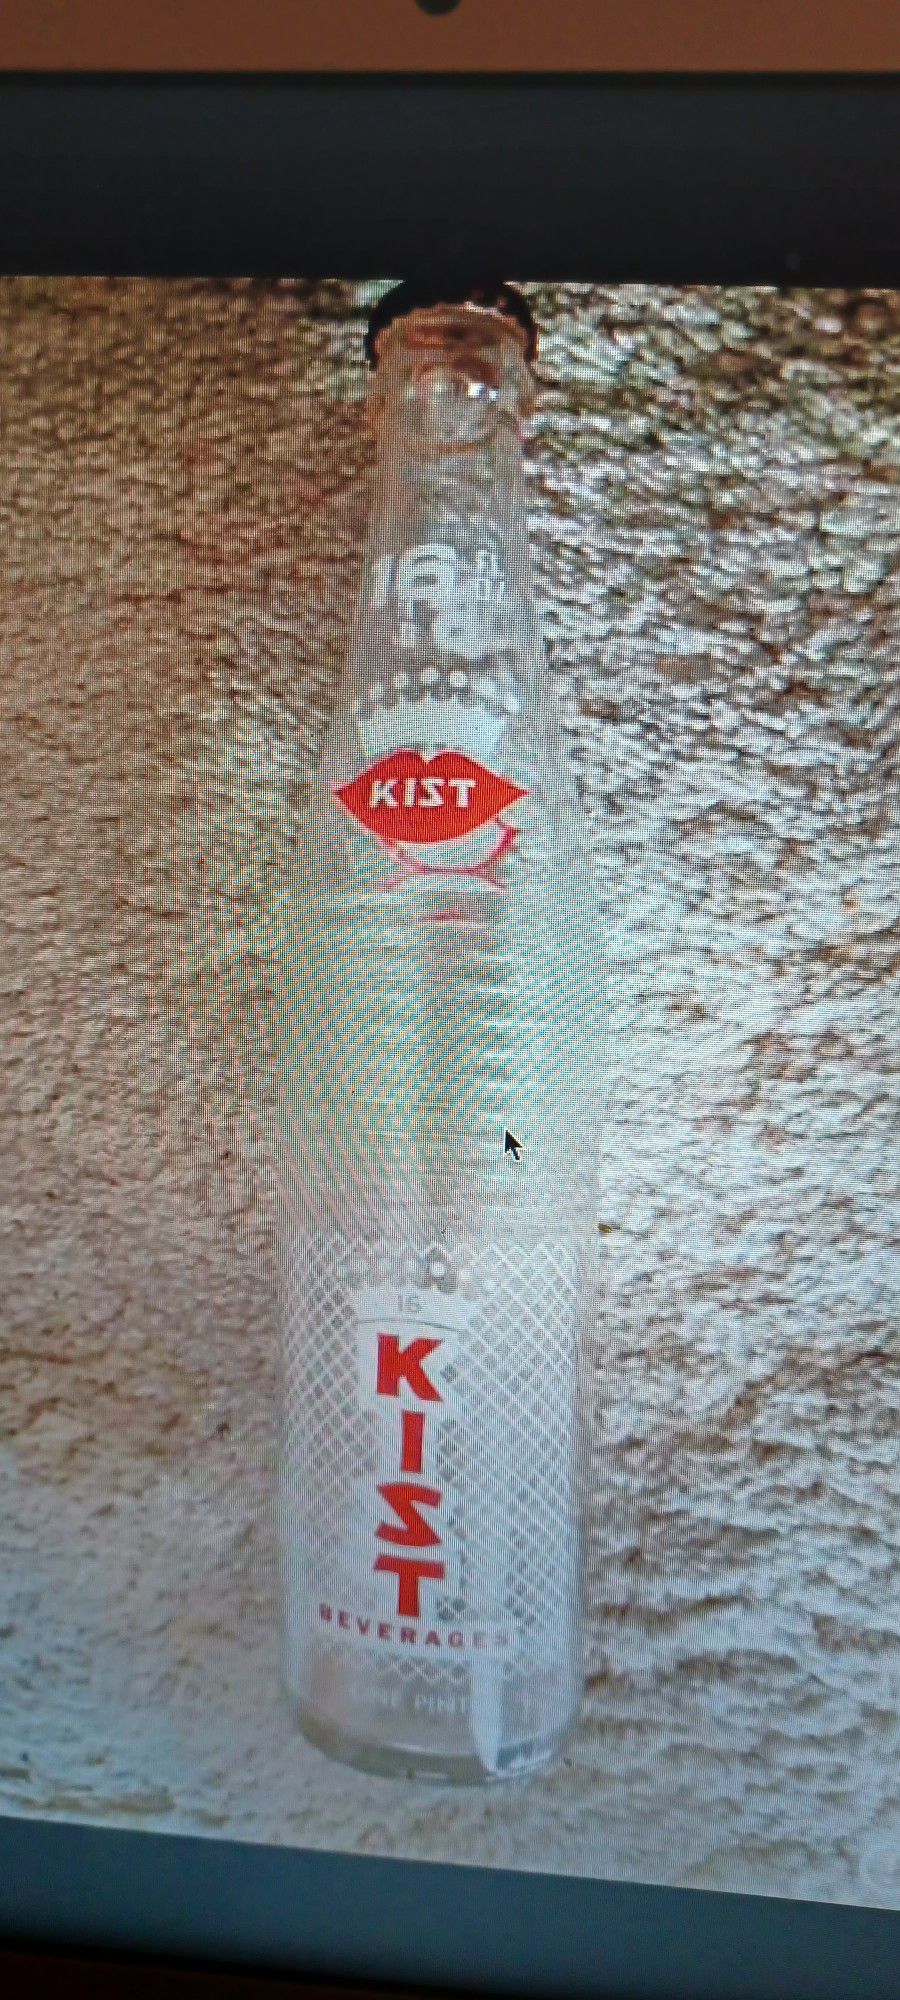 Vintage Soda Bottle 